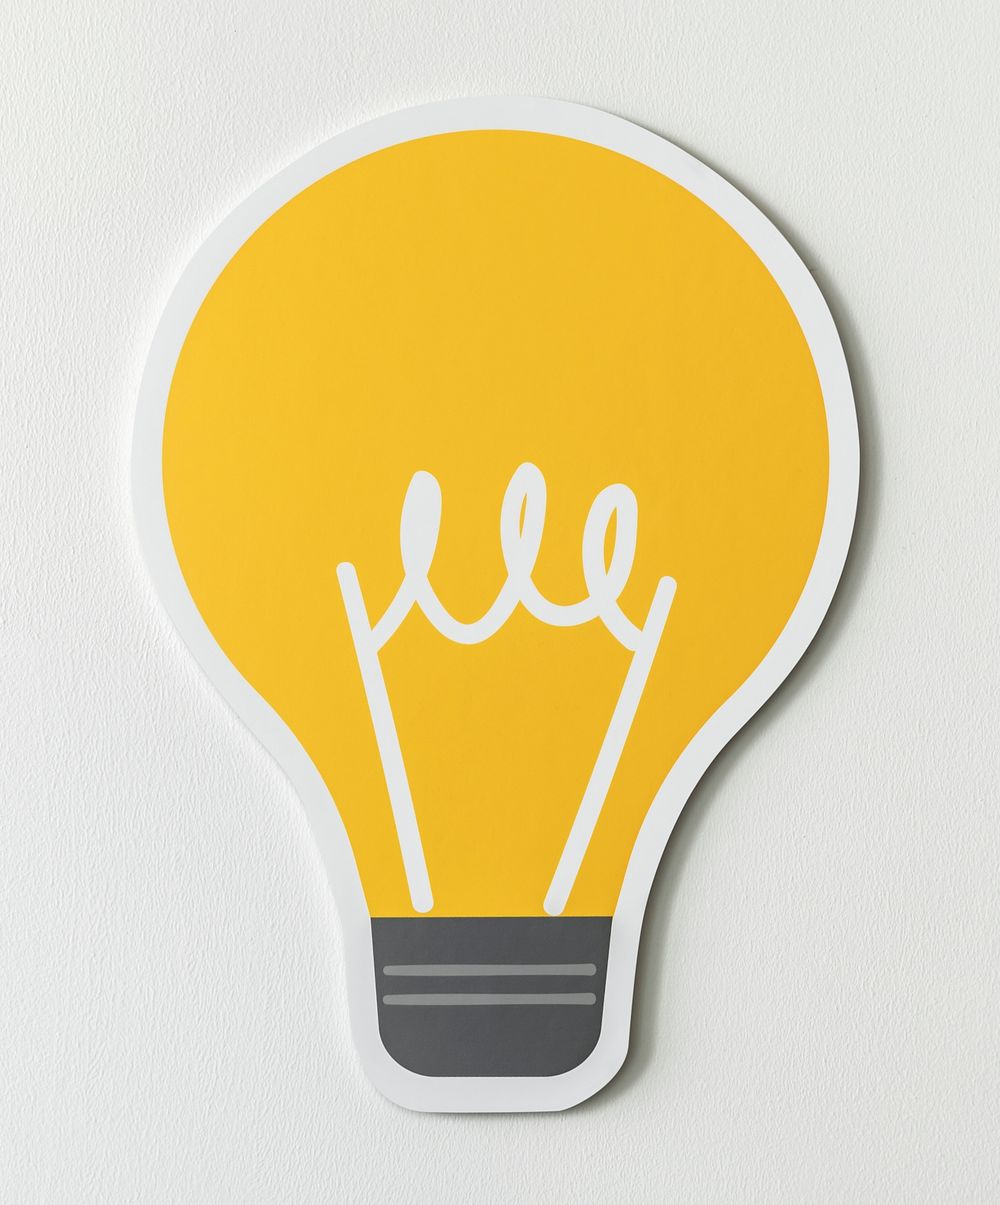 Creative light bulb ideas icon